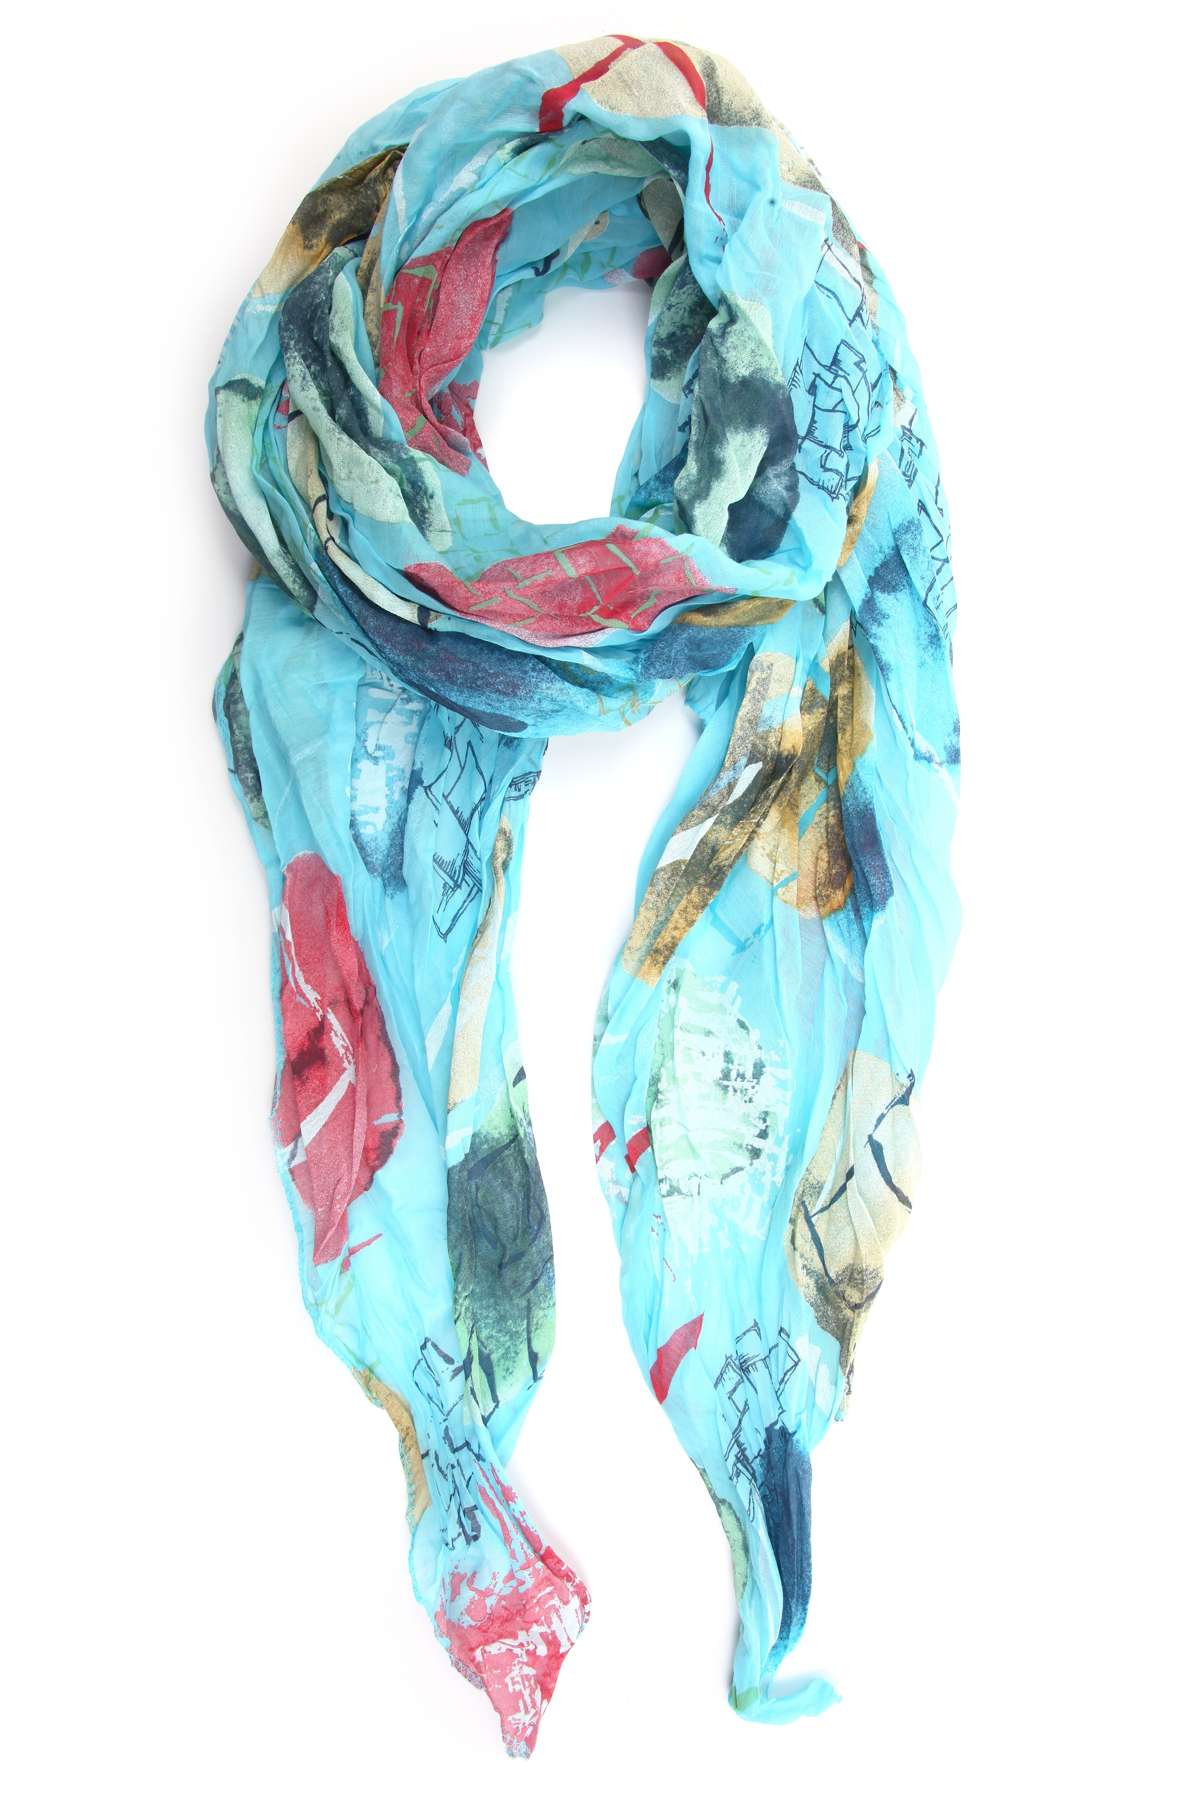 Модный шарф (1 шт.) разных цветов и форм.